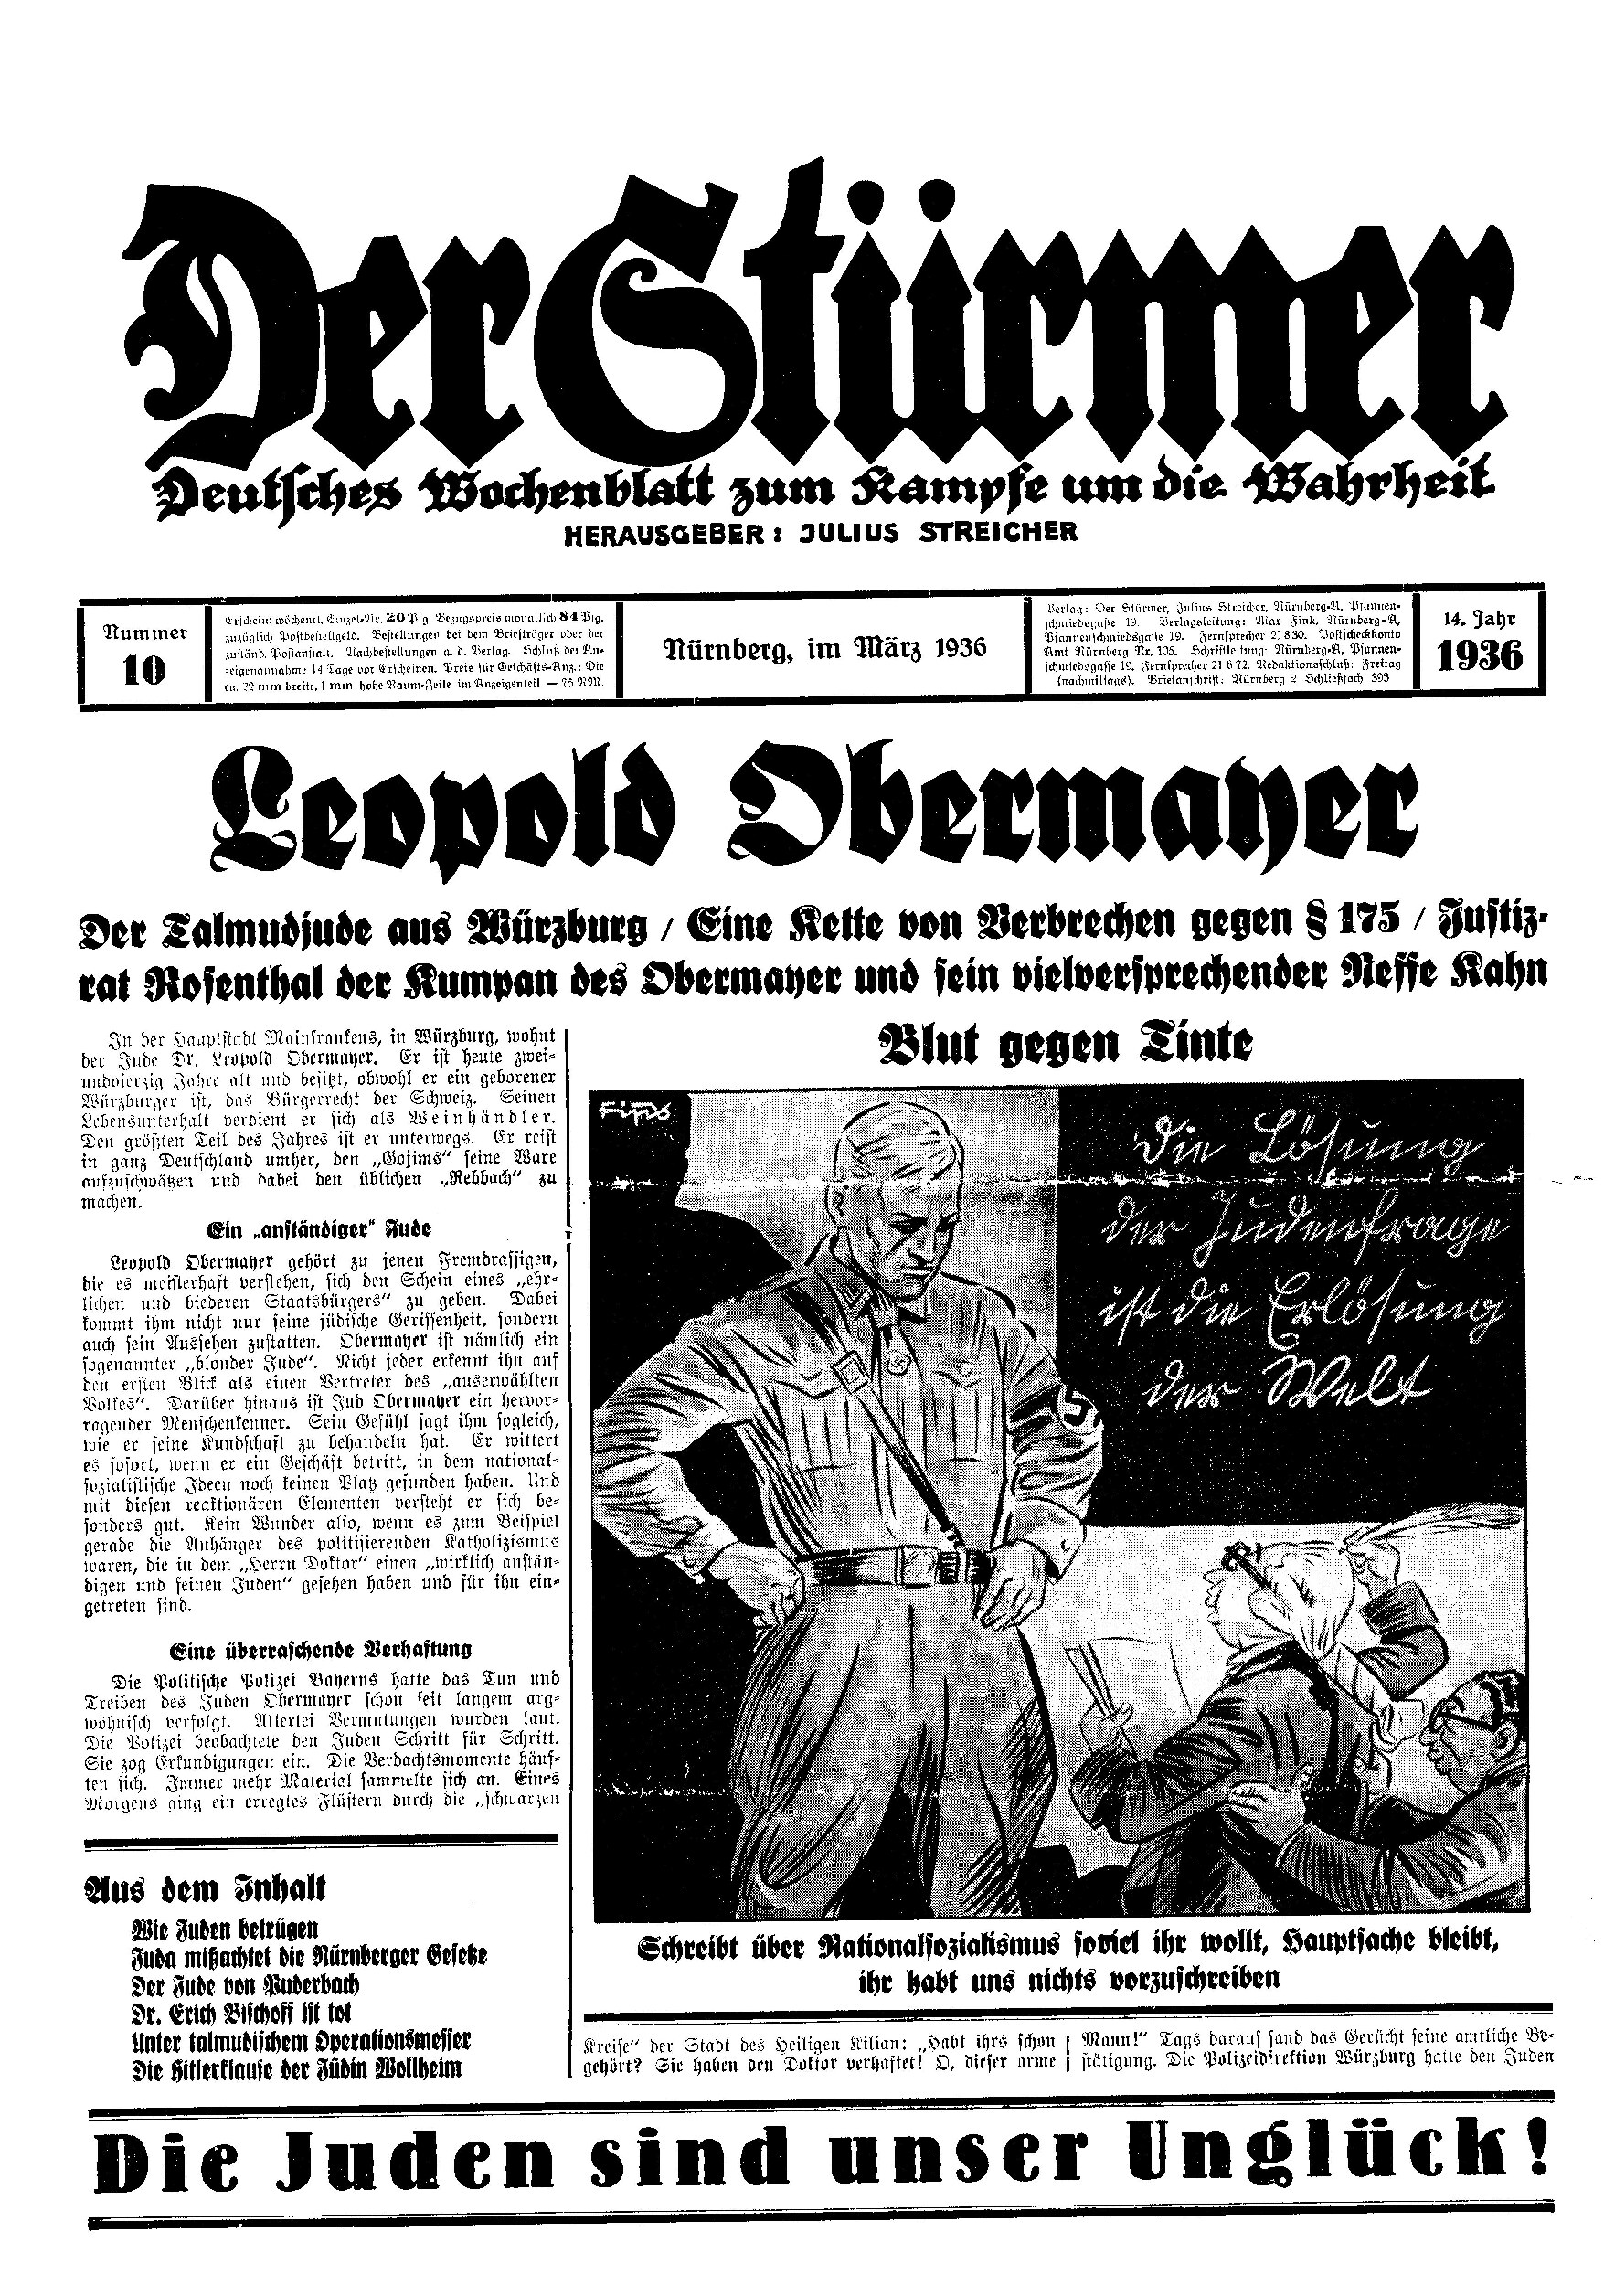 Der Stürmer - 1936 Nr. 10 - Leopold Obermaner